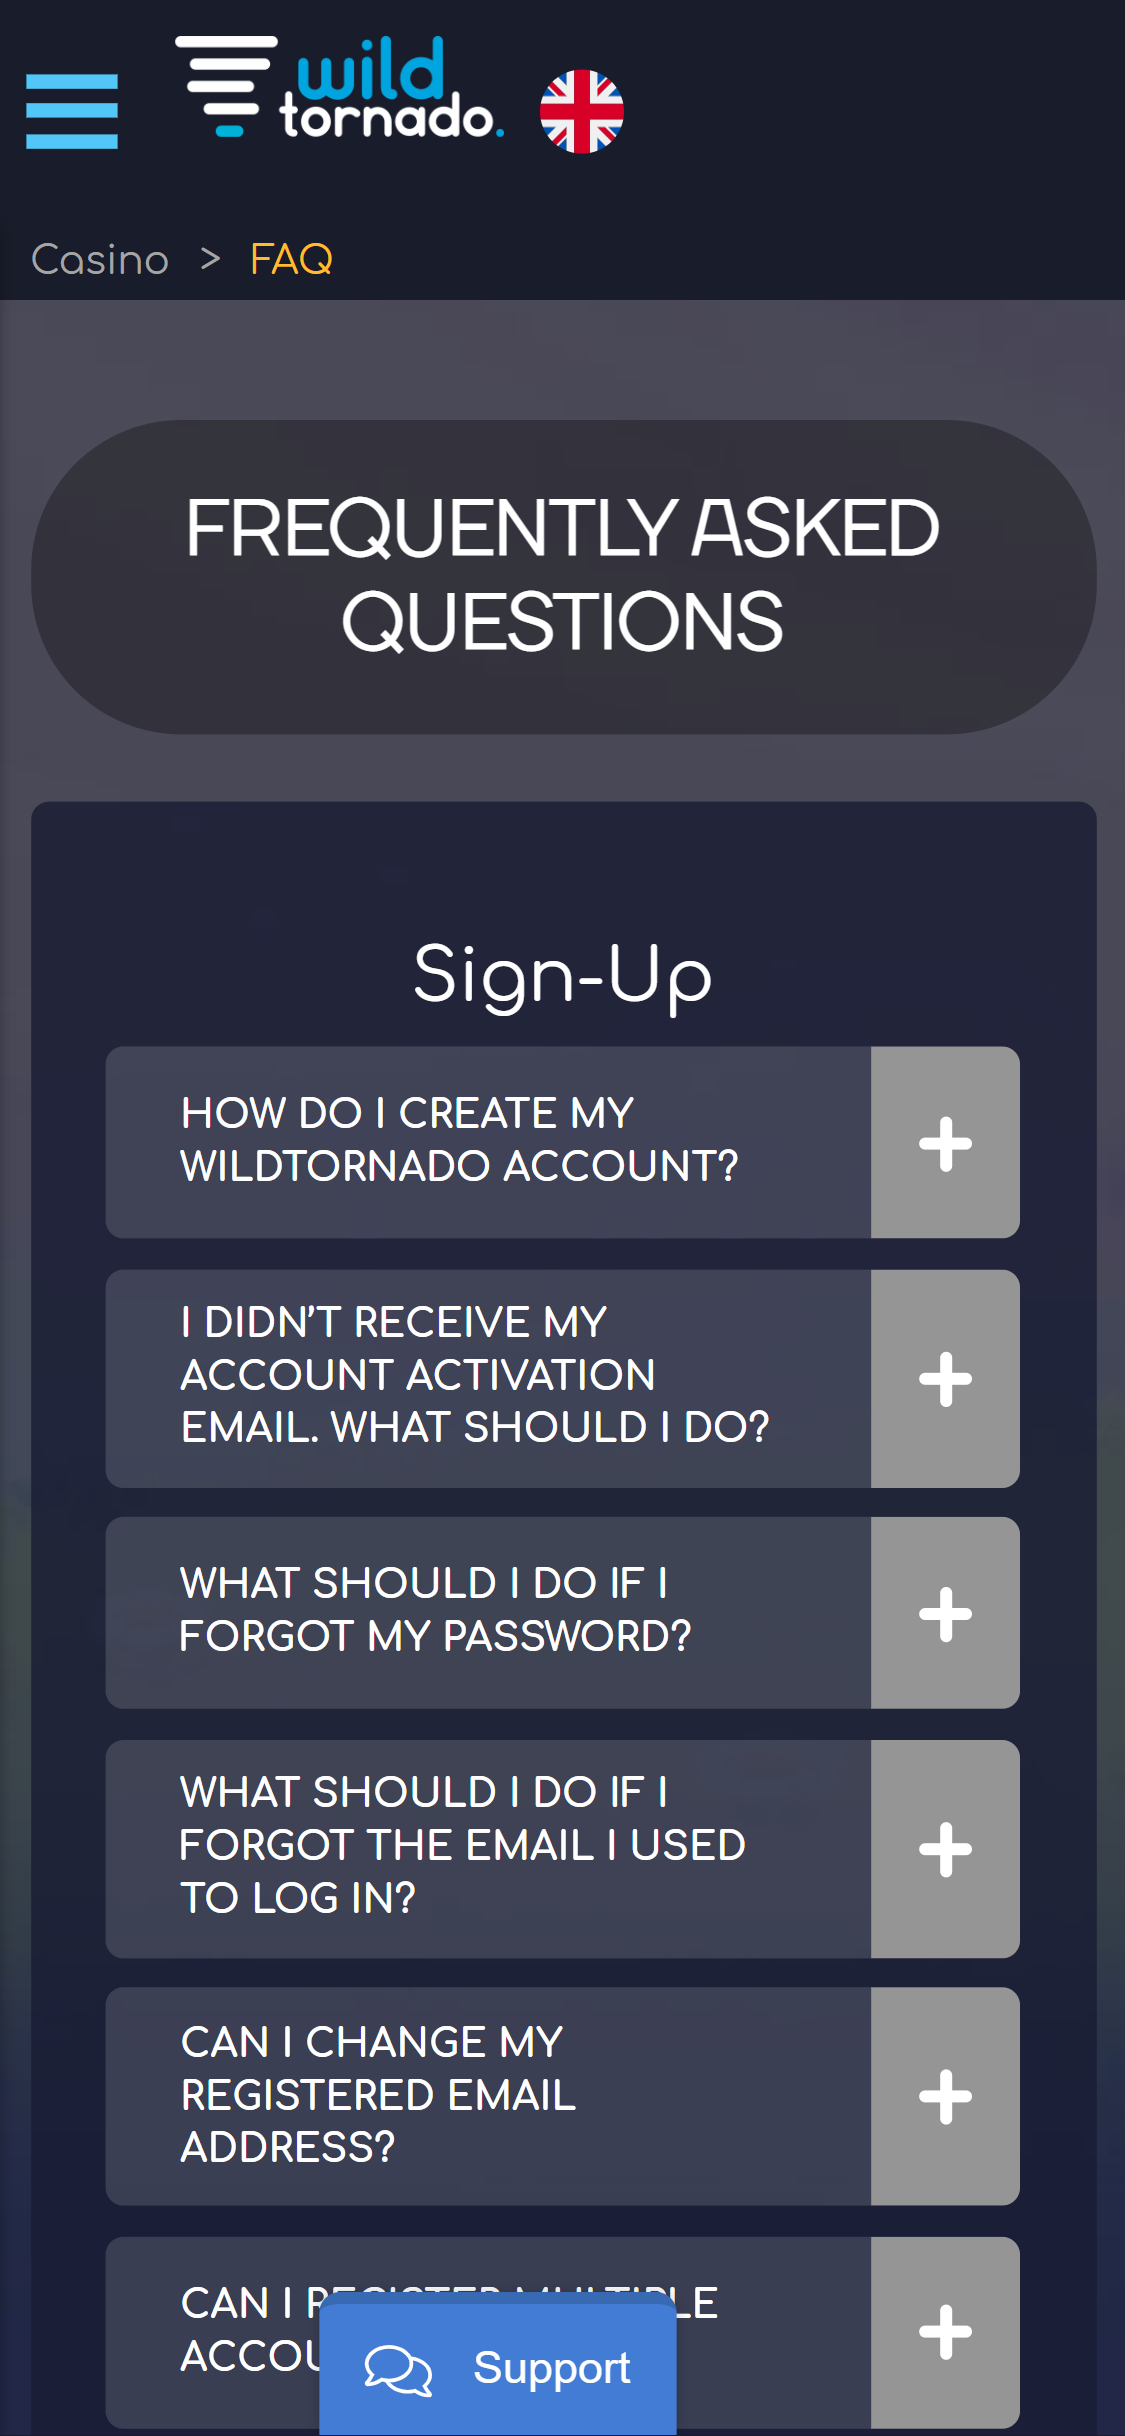 WildTornado Casino Mobile Support Review